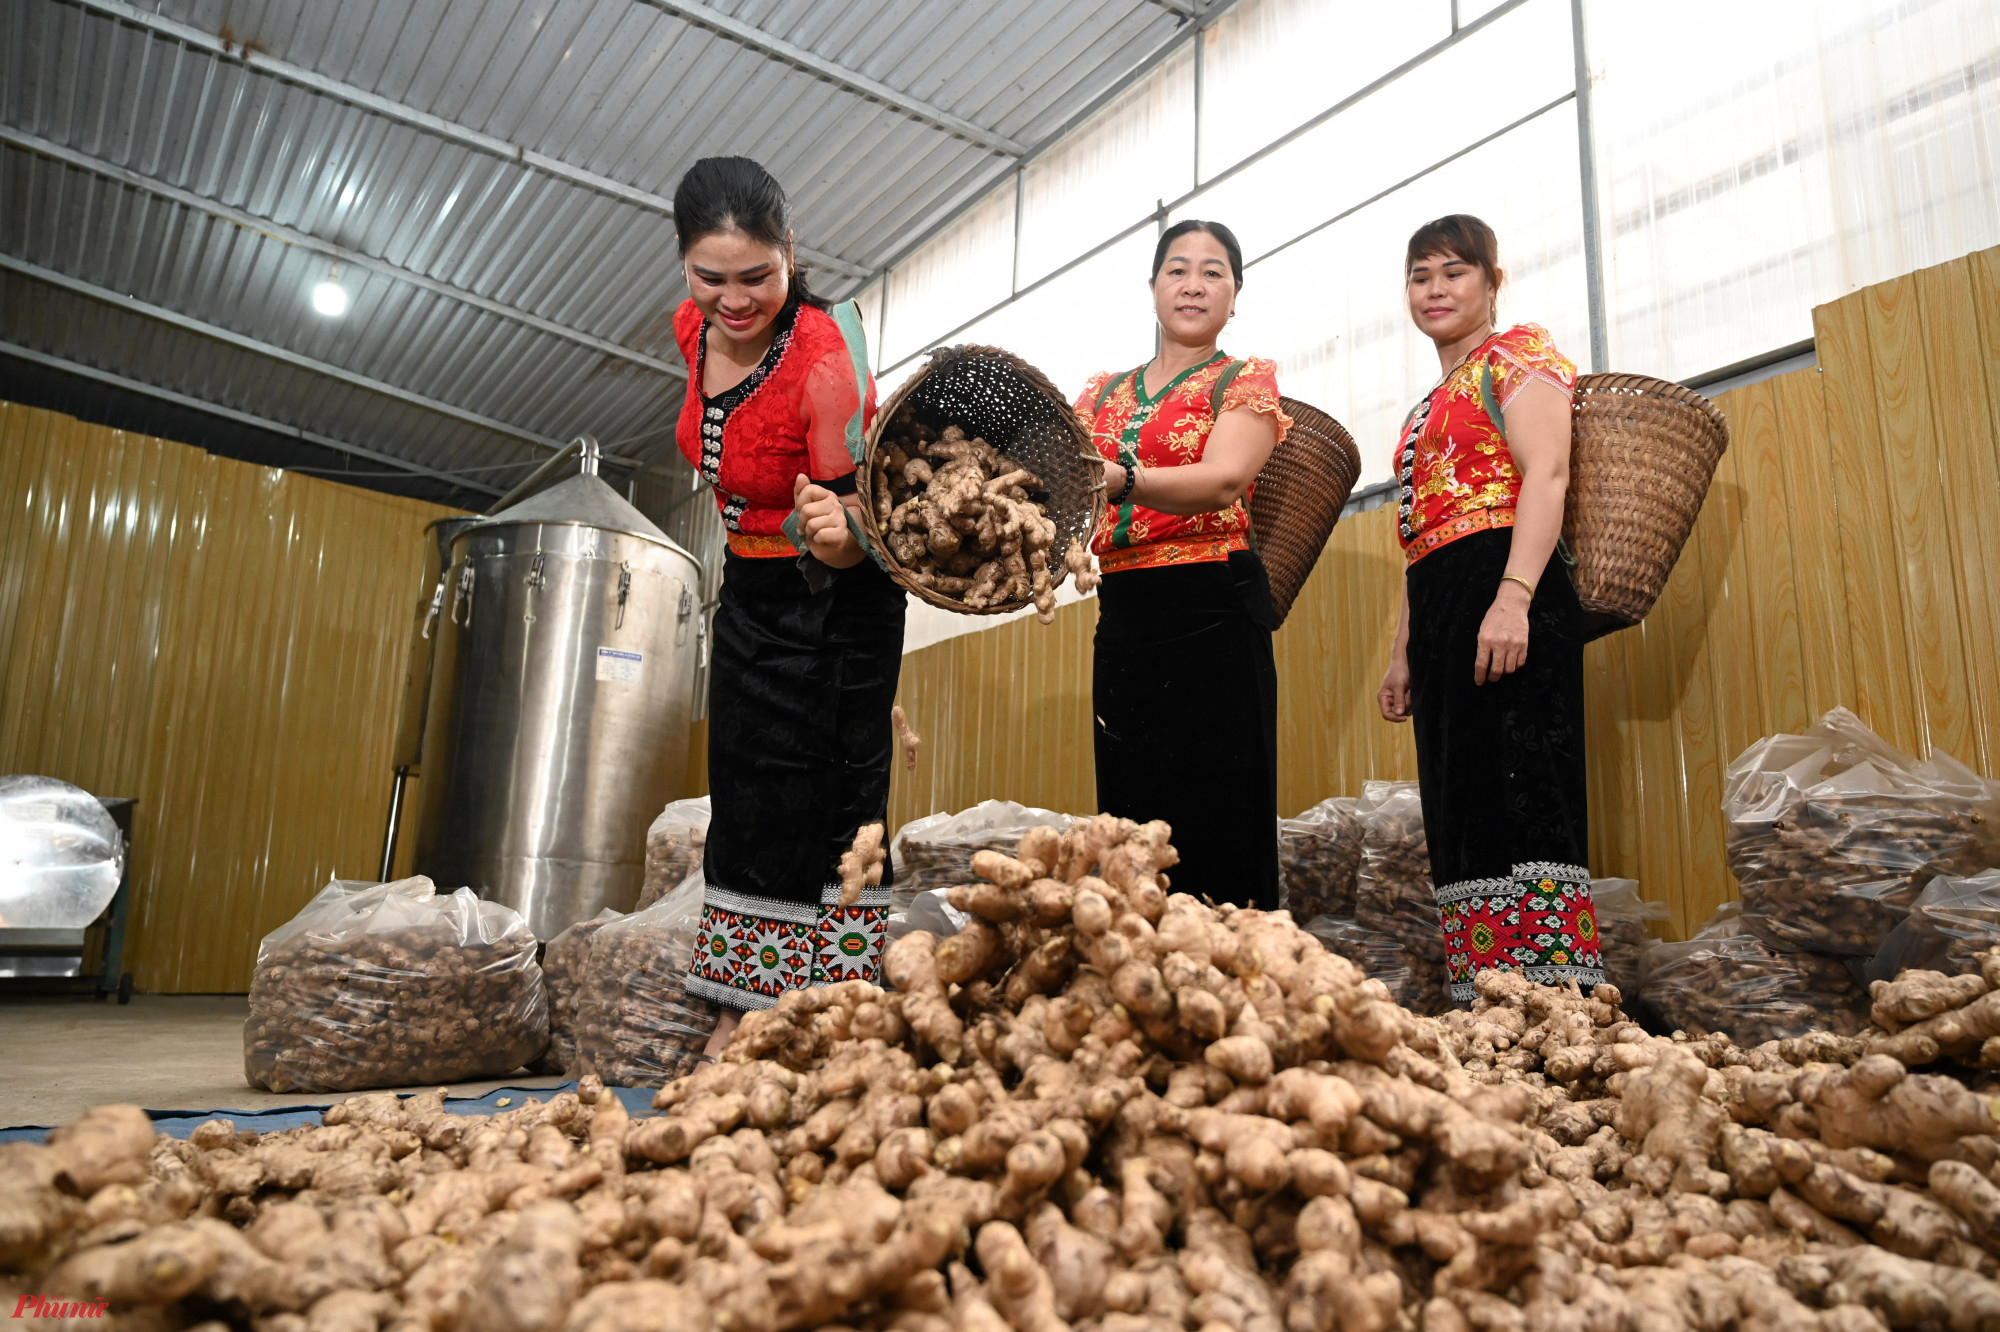 Hiện HTX Dịch vụ nông nghiệp & Tiểu thủ công nghiệp Hương Sơn cũng là nơi thu mua gừng lớn nhất tại Nghệ An với hơn 1.000 tấn gừng mỗi năm để cung ứng cho các doanh nghiệp trong nước, xuất khẩu ra nước ngoài.